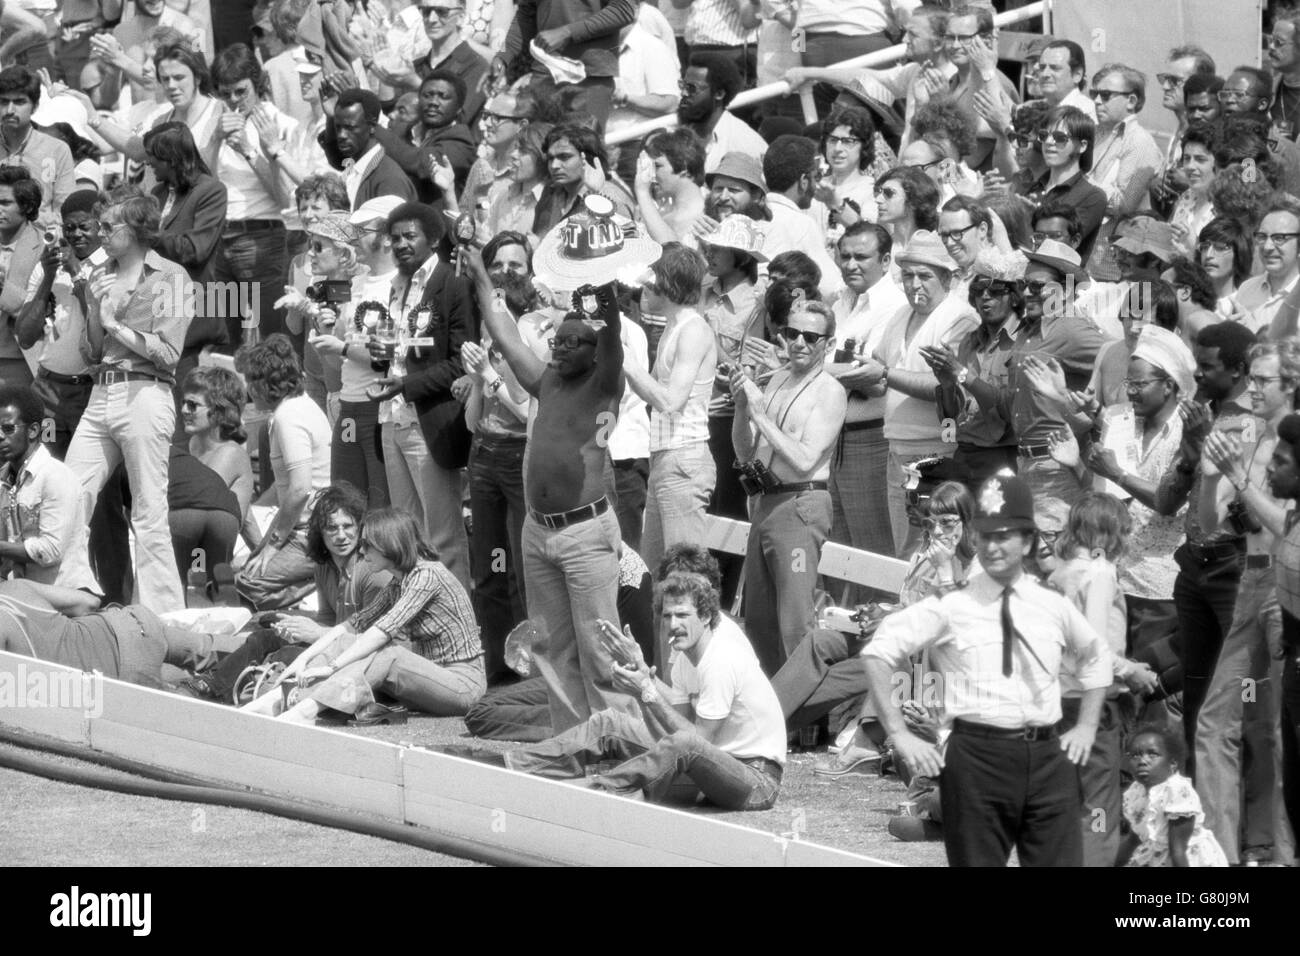 La foule applaudit le capitaine Clive Lloyd des Antilles alors qu'il atteint son siècle lors de la finale de la coupe du monde Prudential contre l'Australie. Banque D'Images